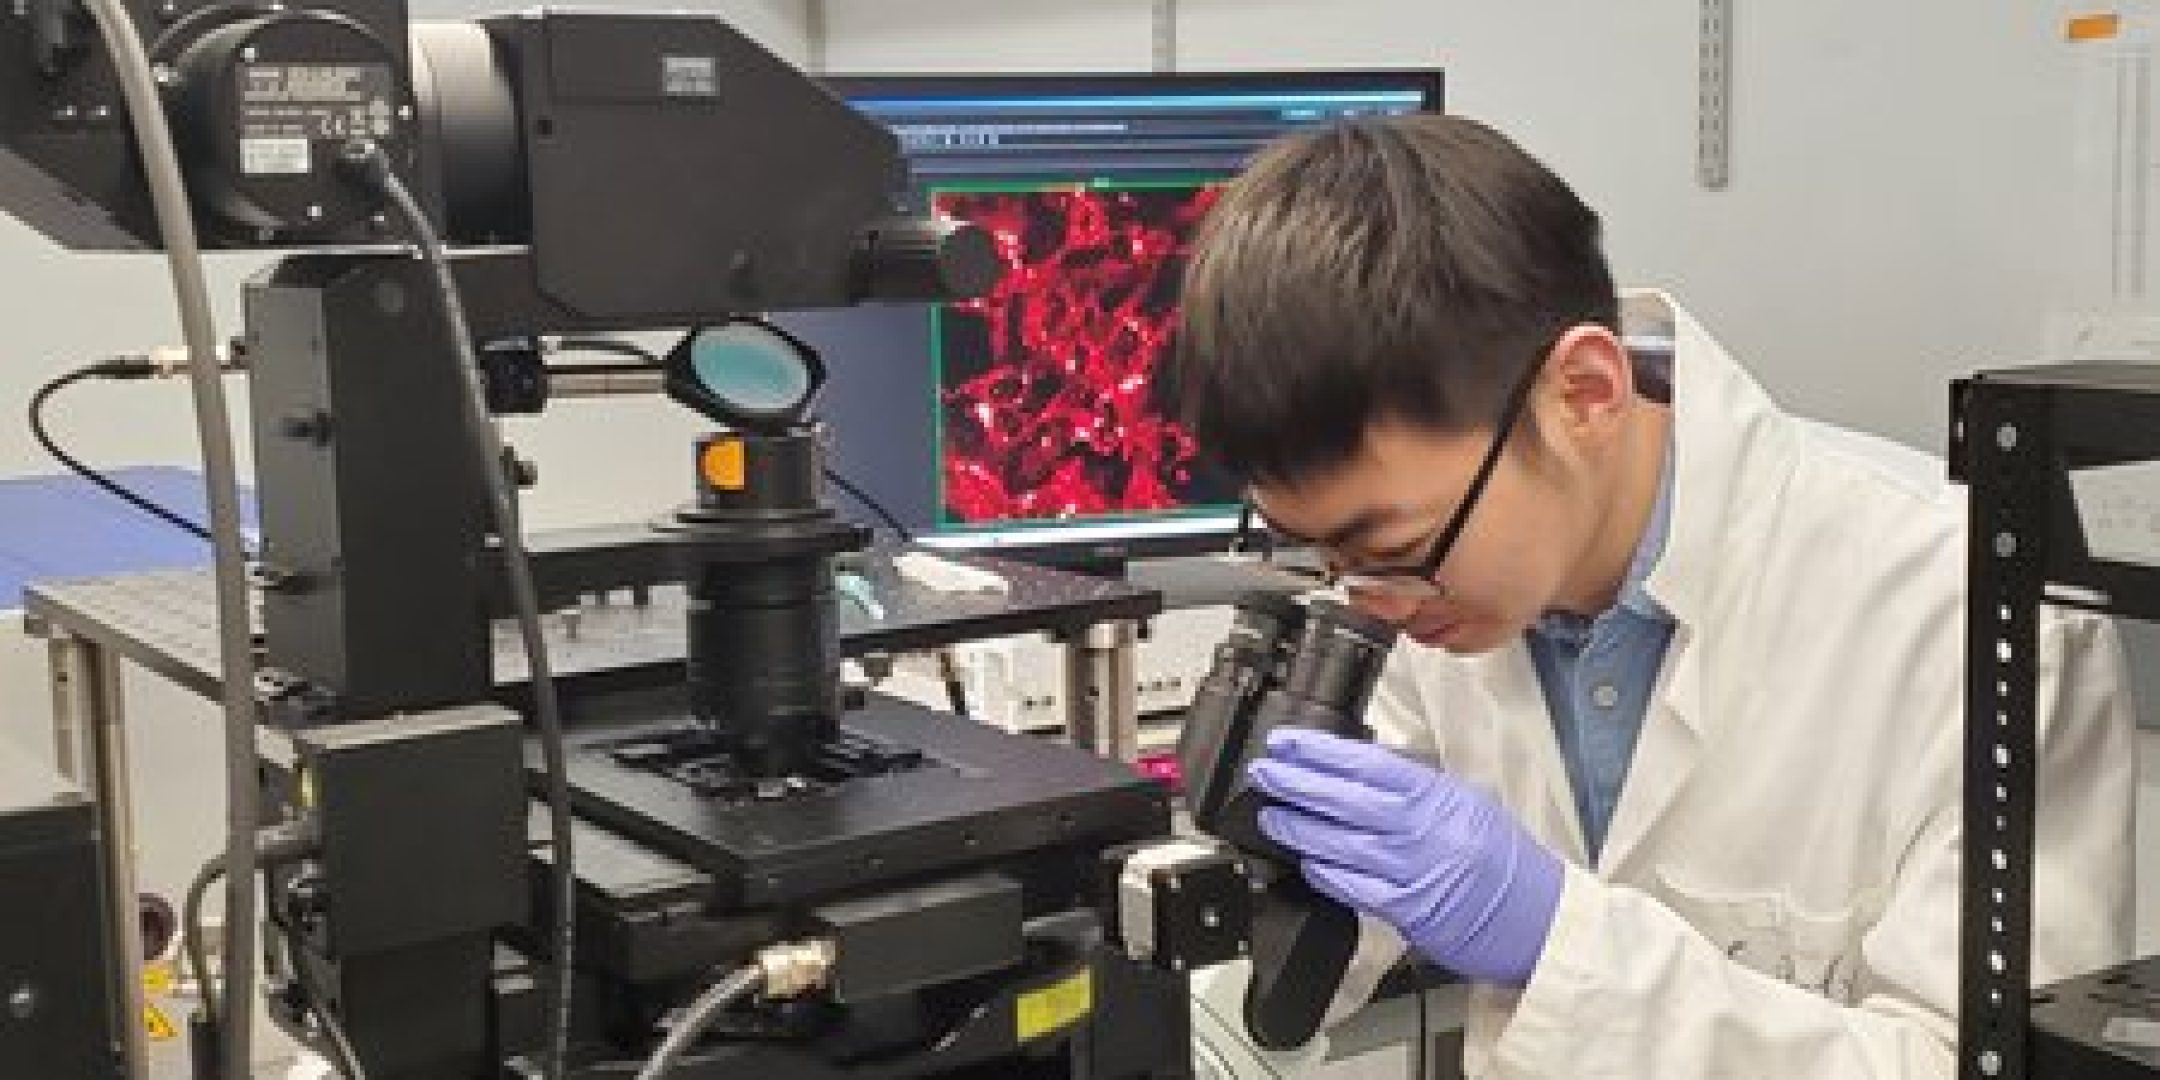 Jiajun Du, étudiante de troisième cycle, prend une image de microscopie à diffusion Raman stimulée de cellules cancéreuses de mélanome en laboratoire.
Crédits : Caltech